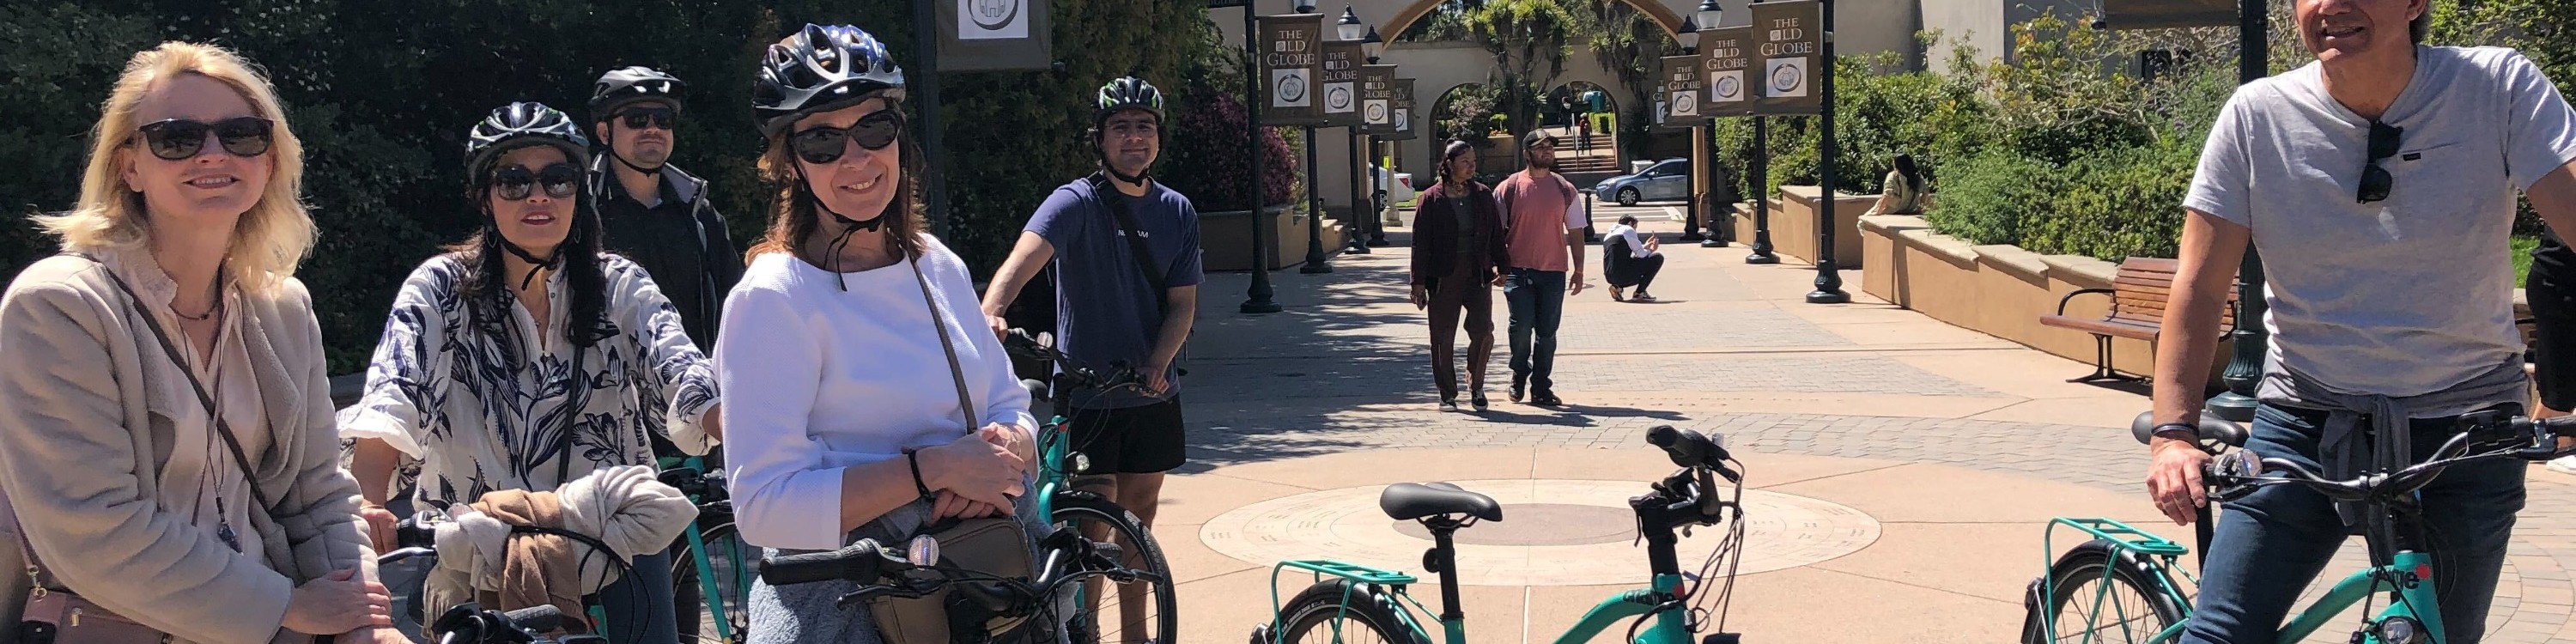 聖地牙哥城市精華電動自行車導覽之旅